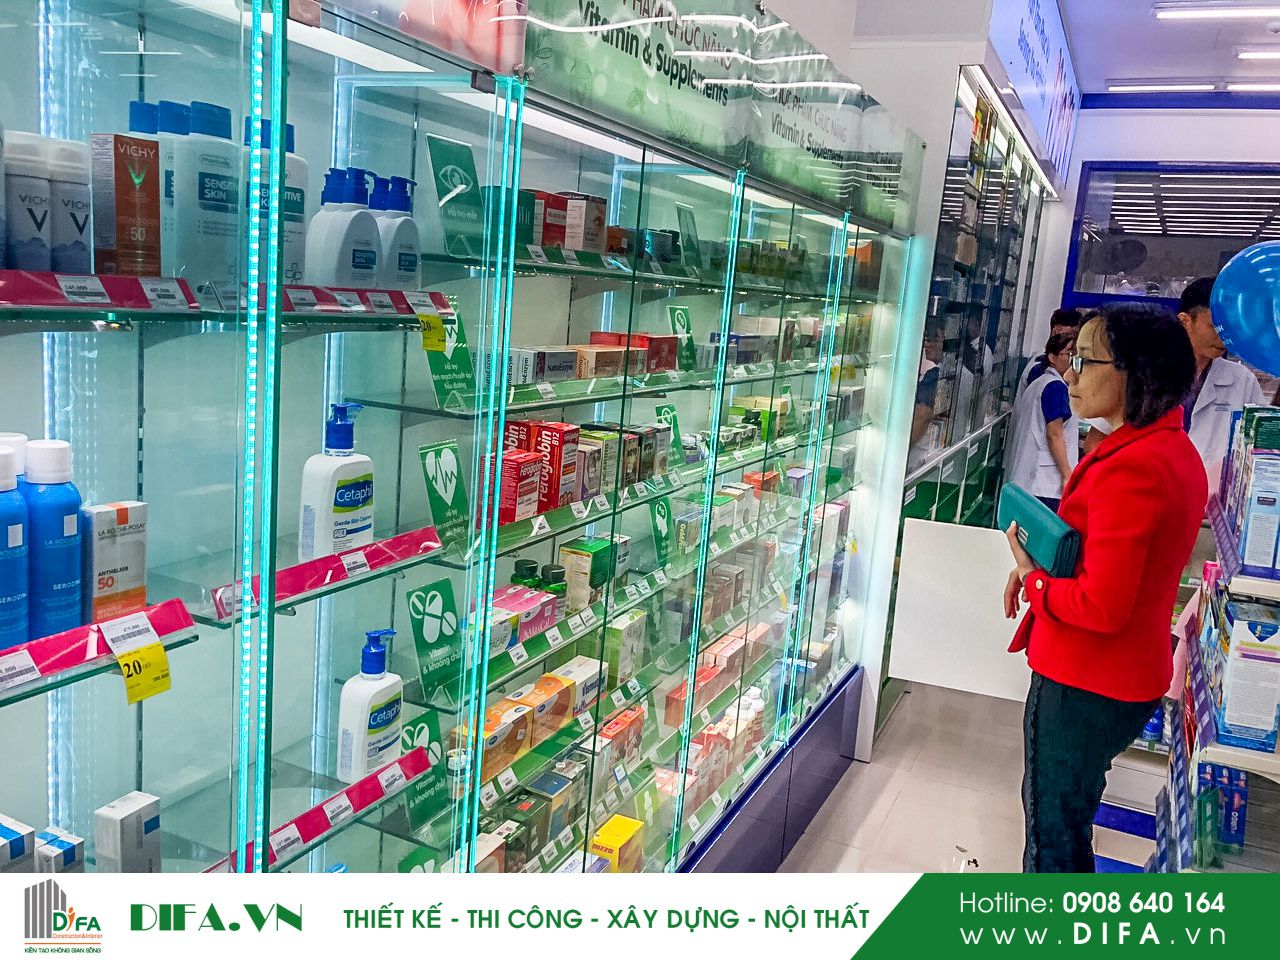 Thi công xây dựng chuỗi cửa hàng - Nhà thuốc Pharmacity số 291 - 293 Nguyễn Văn Linh - Đà Nẵng